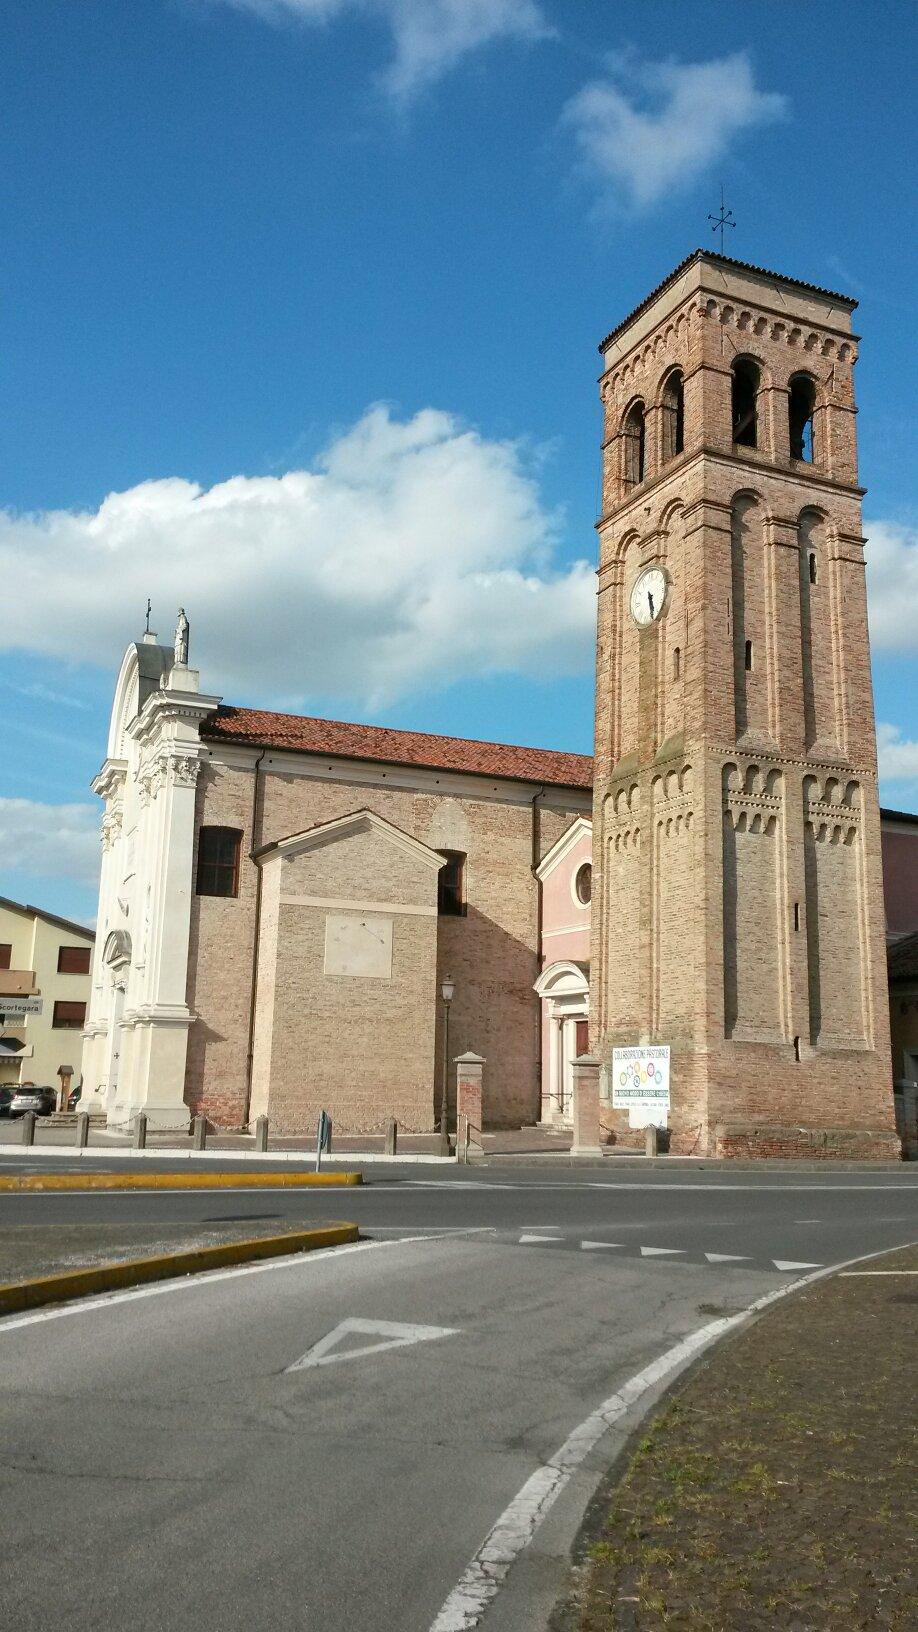 Chiesa di Zianigo